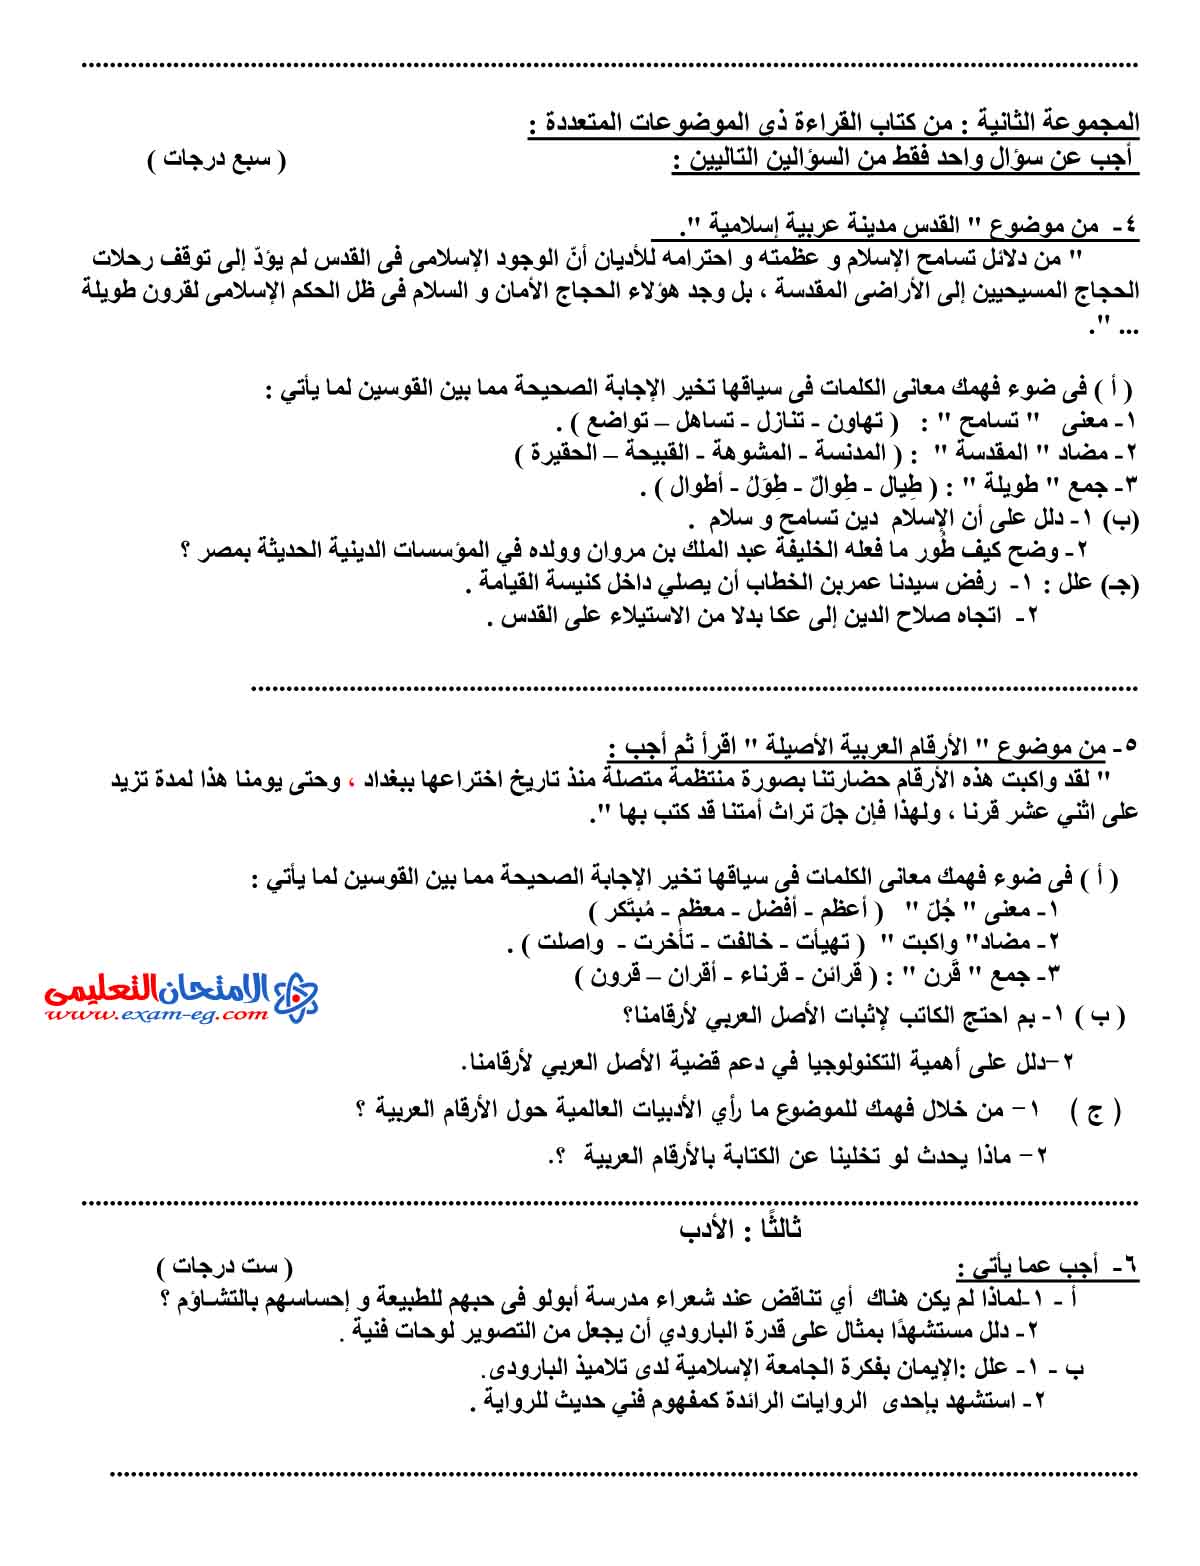 امتحان اللغة العربية 2 - مدرسة اون لاين (2)